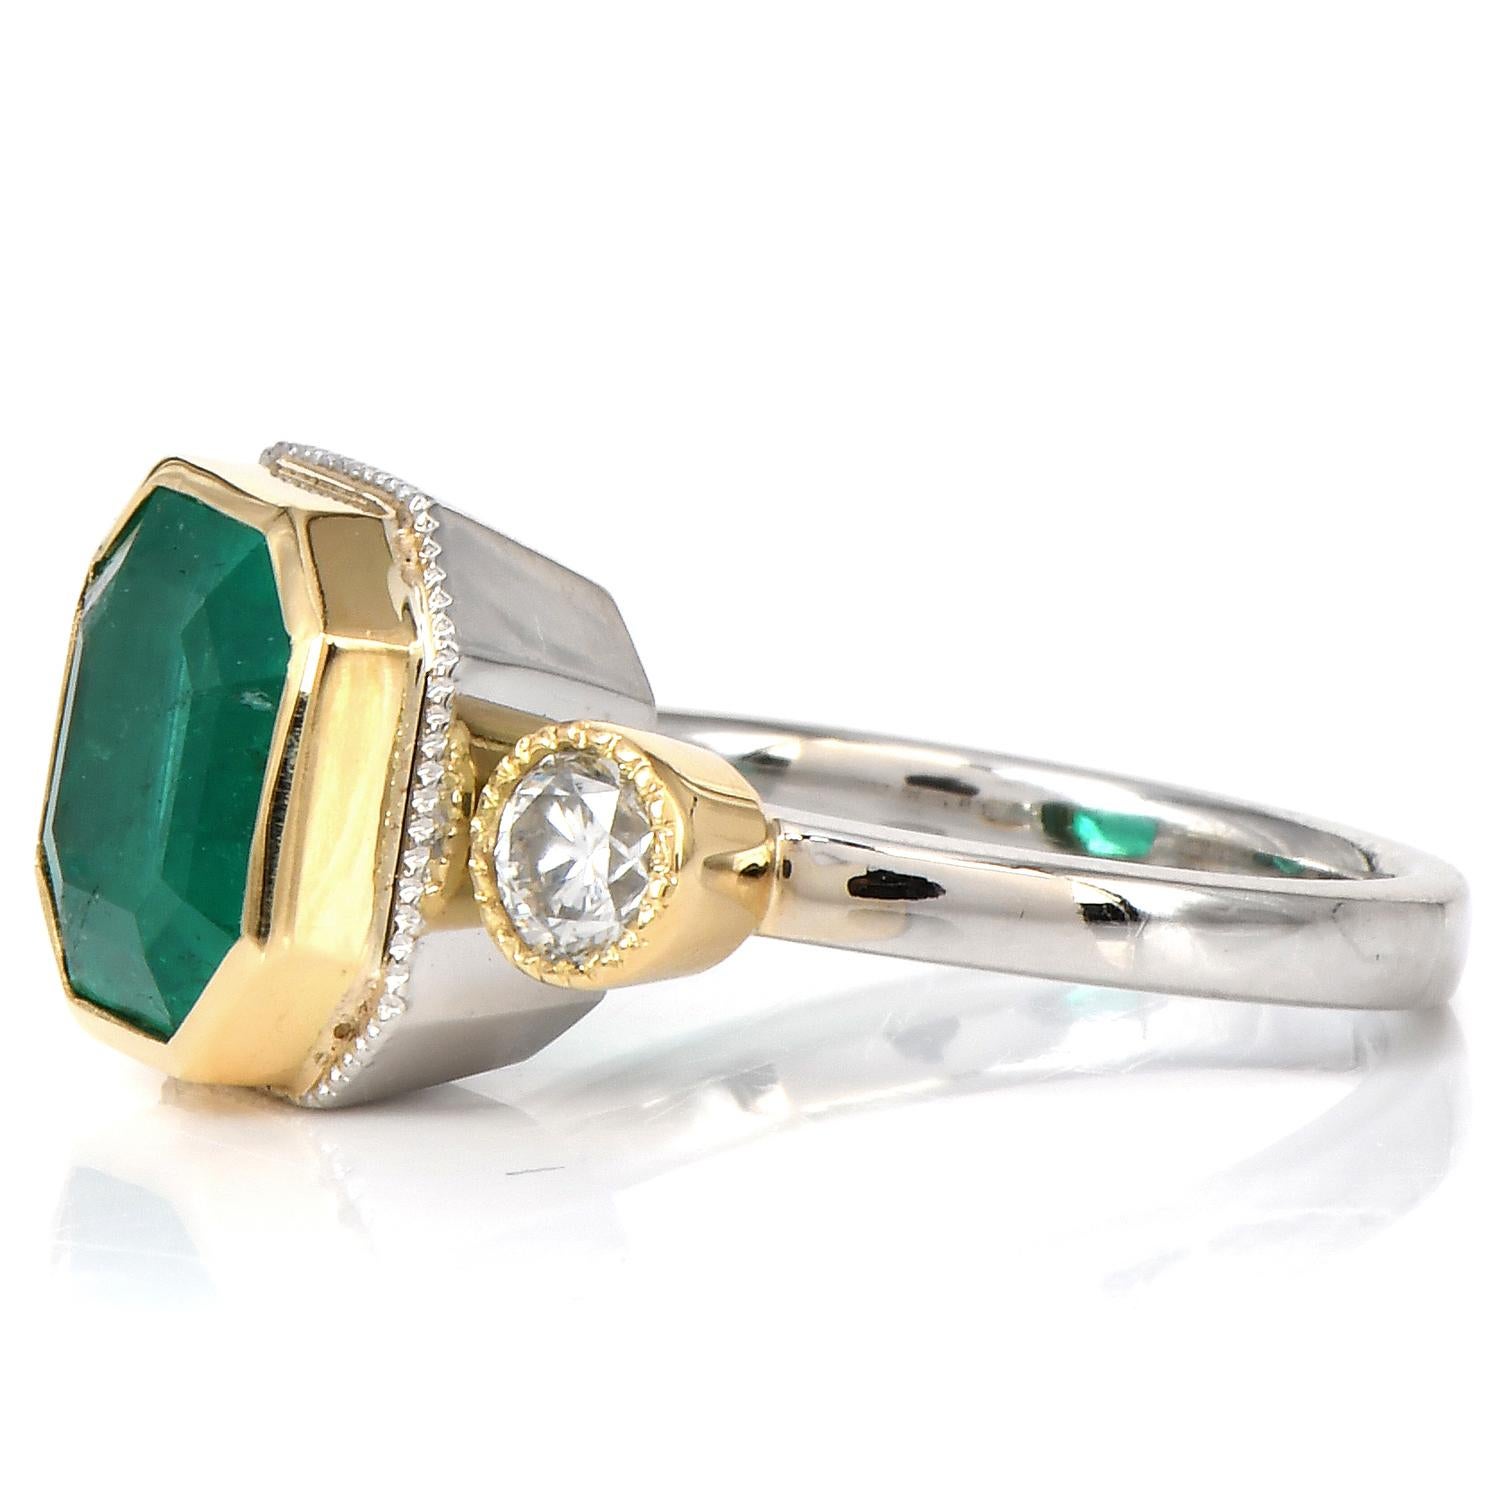 Gönnen Sie sich diesen herrlichen Dreisteinring mit Smaragd und Diamant im Ascher-Schliff! 

Dieser exquisite, transparente Echte Smaragd, der im Gegensatz zu anderen Smaragden Weiblichkeit und Anmut ausstrahlt, ist in massivem Platin und 18 Karat